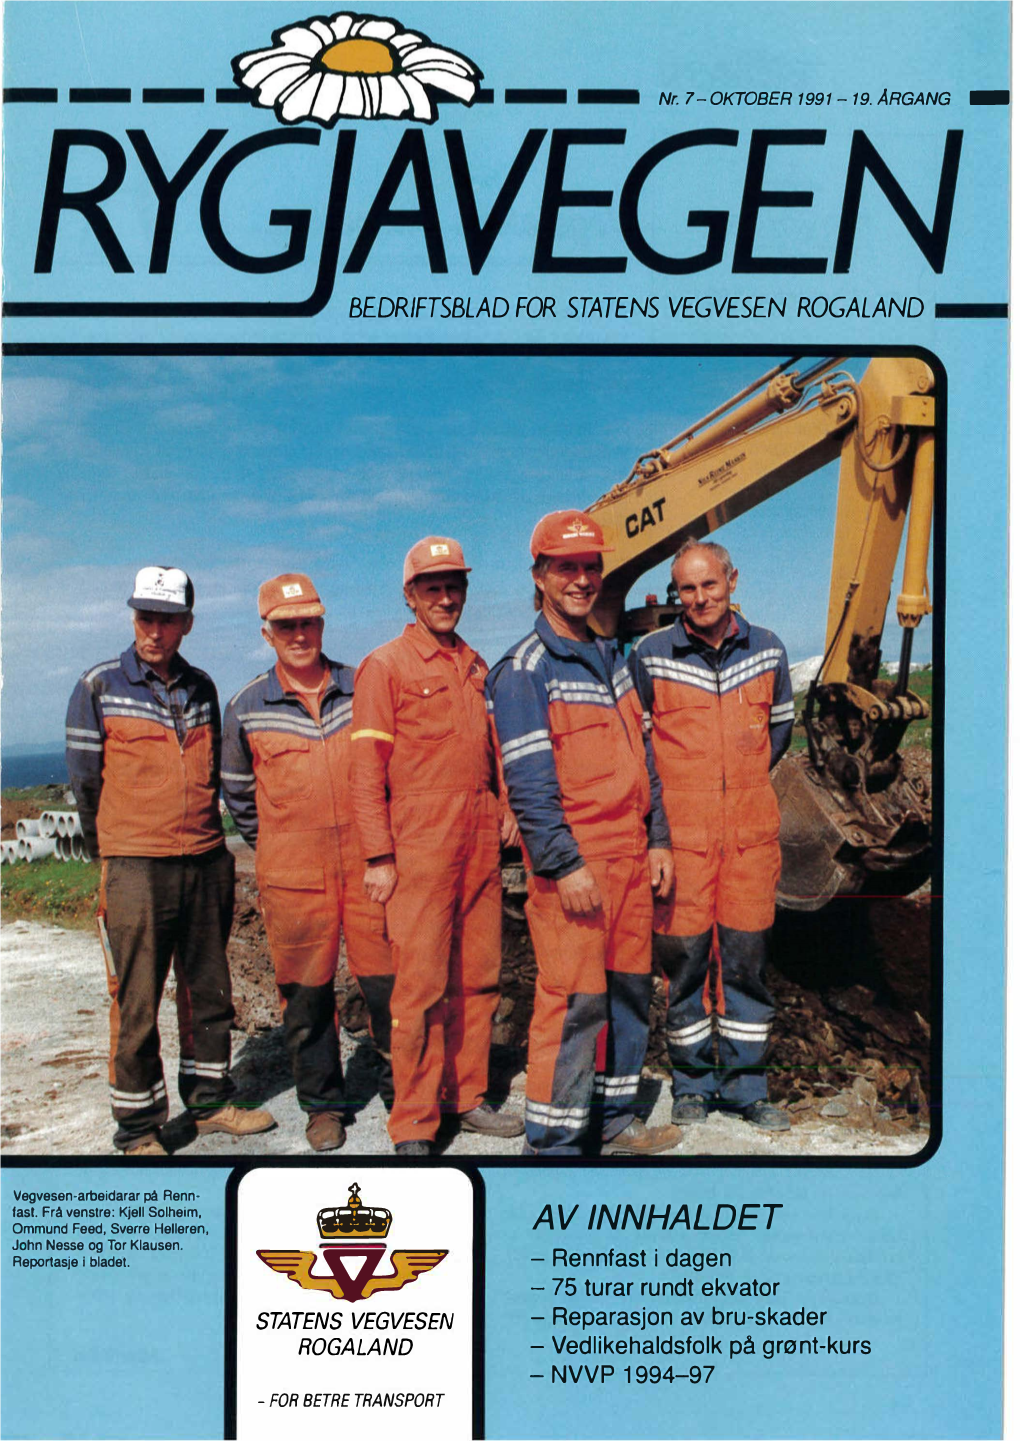 Rygjavegen 1991 (7).Pdf (4.748Mb)